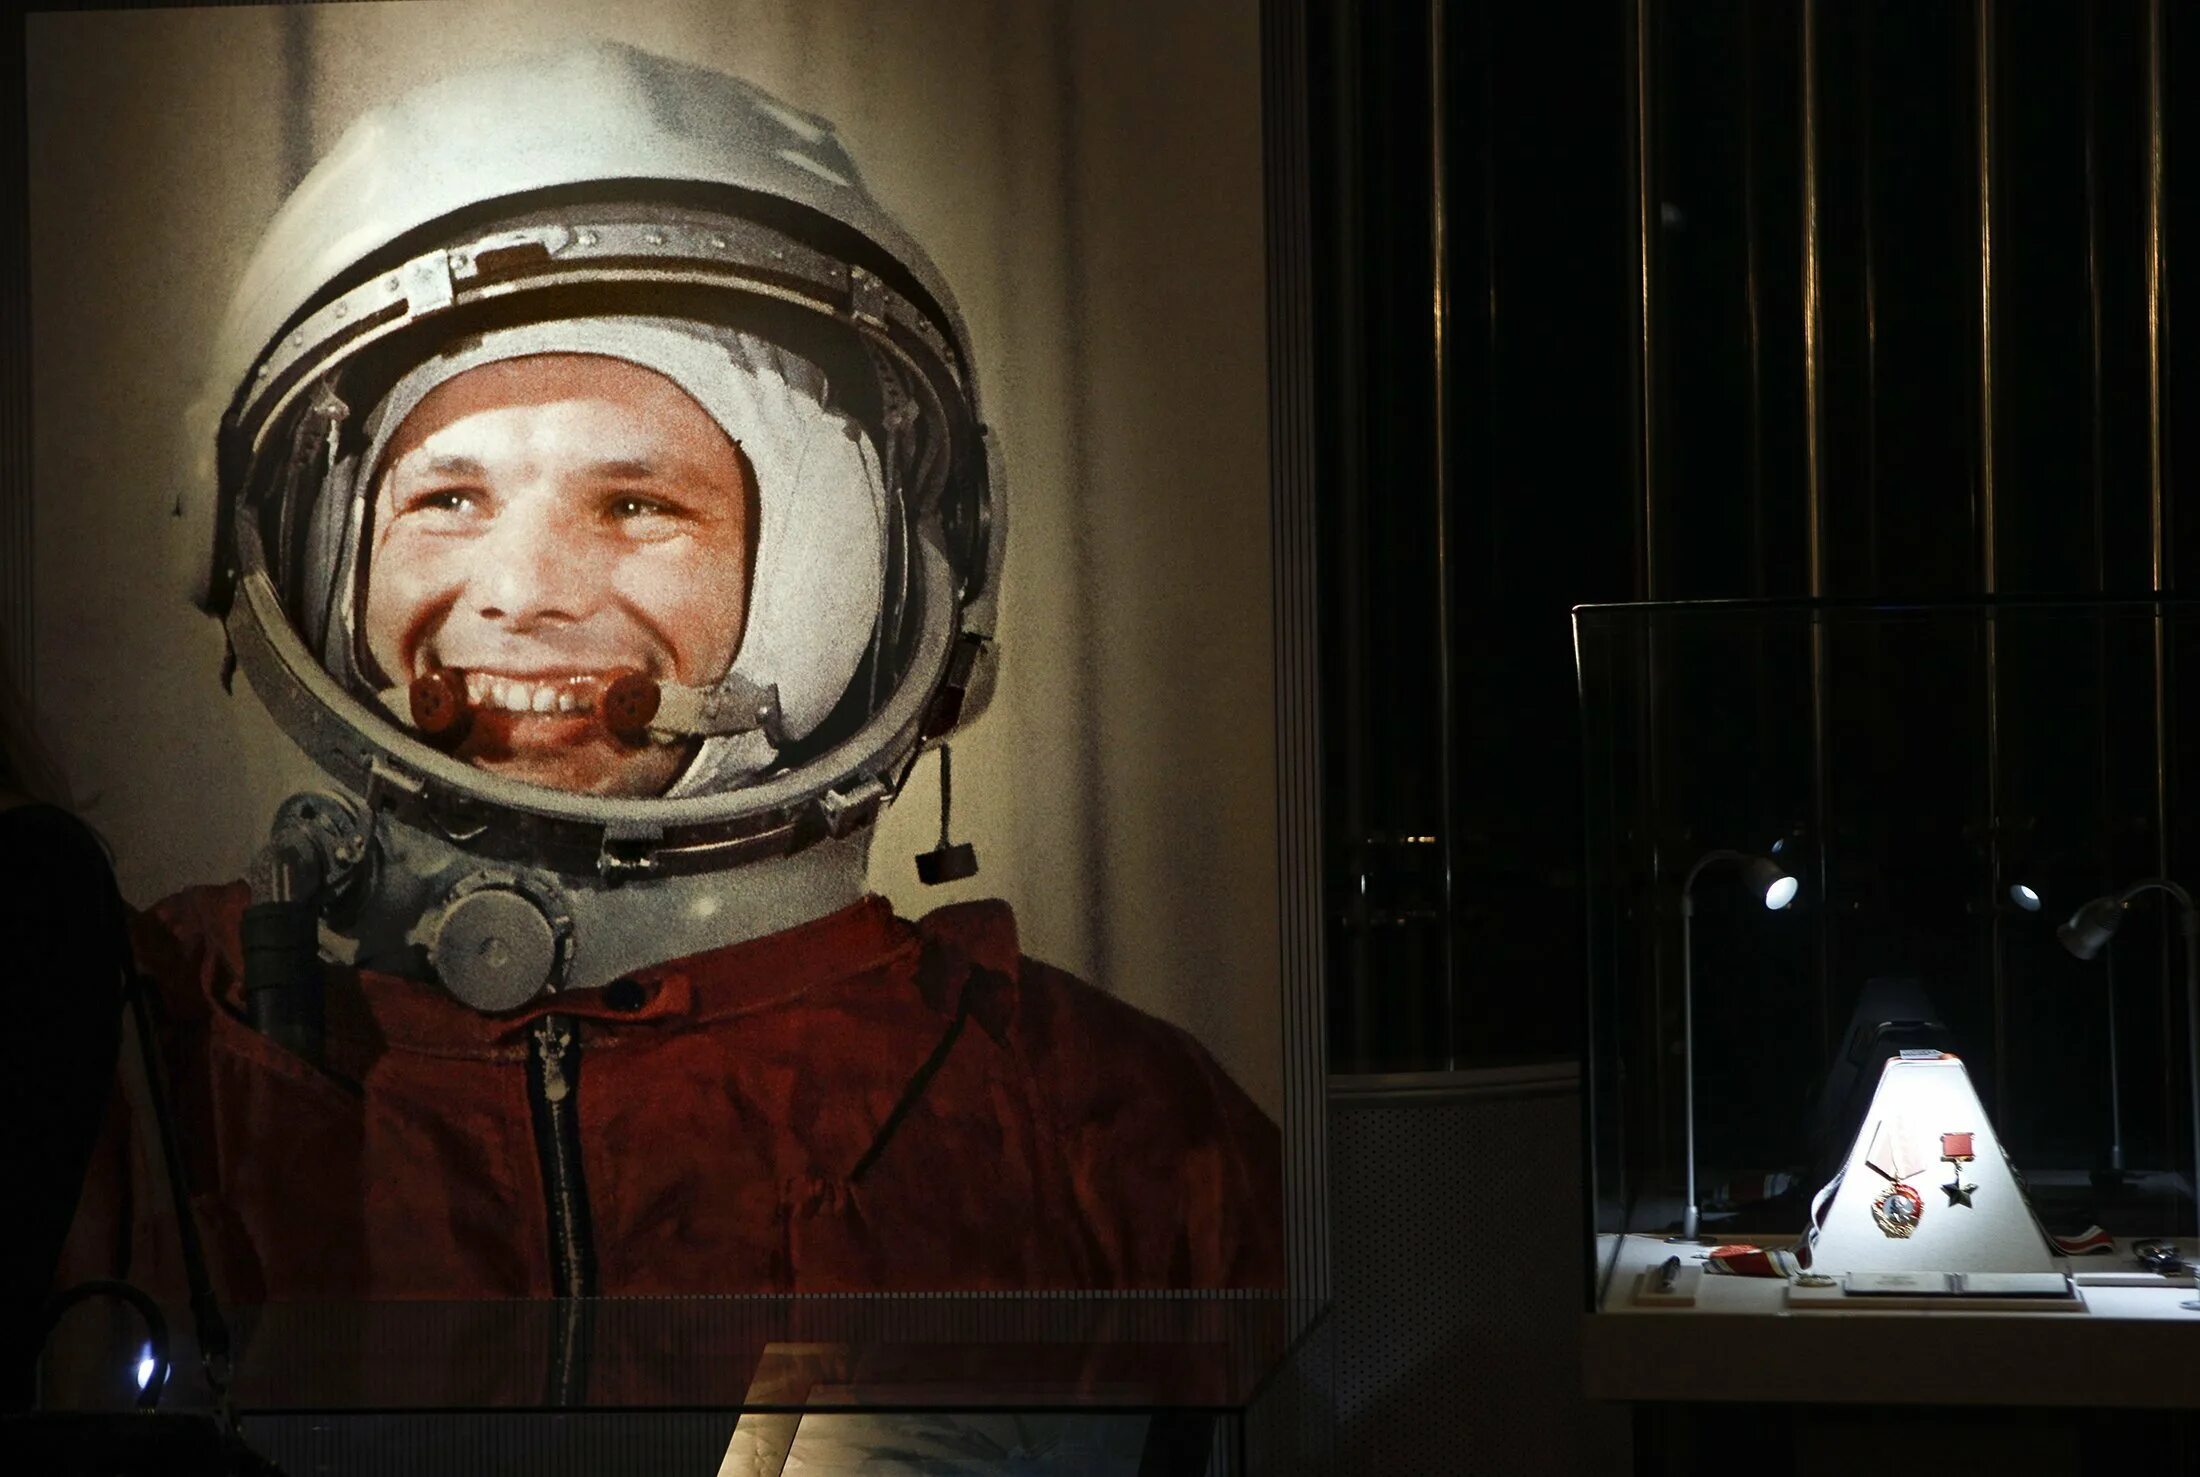 Полёт Юрия Гагарина в космос. Самый 1 полет в космос